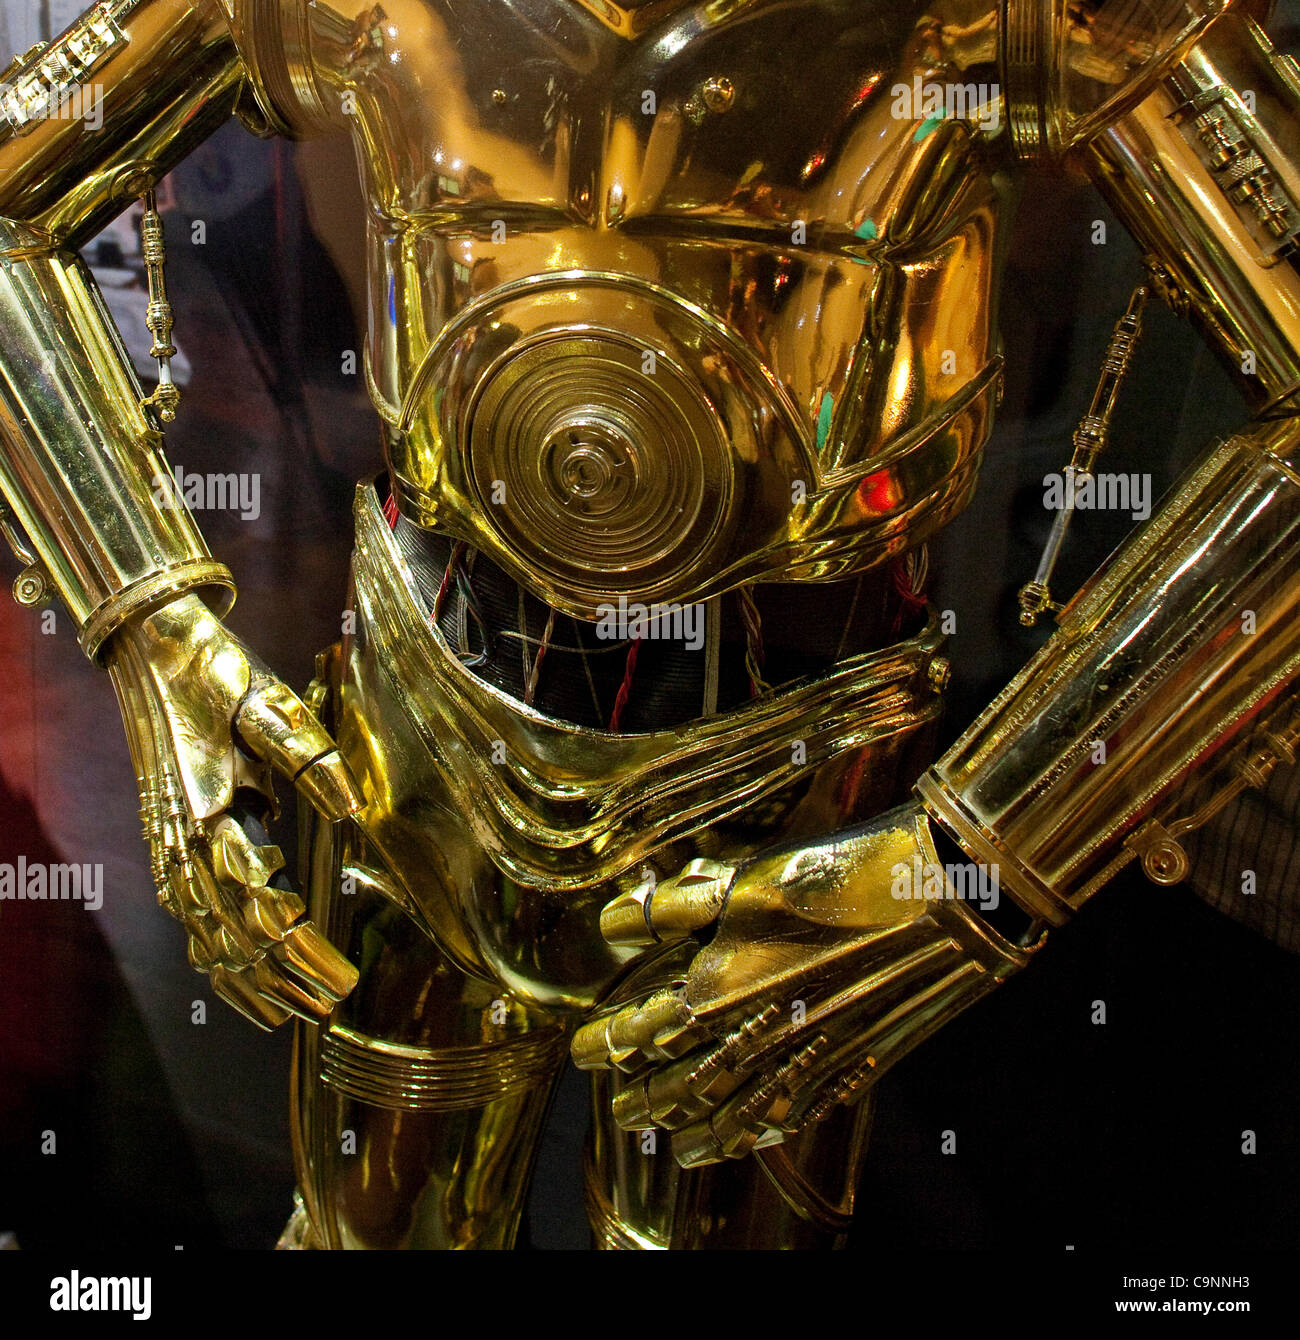 22. Januar 2012 - Santa Ana, Kalifornien, USA - Original-Kostüm von C-3PO -  eine Protokoll Droid in allen 6 Star Wars-Filmen verwendet: Episode IV:  eine neue Hoffnung, Episode V: das Imperium schlägt